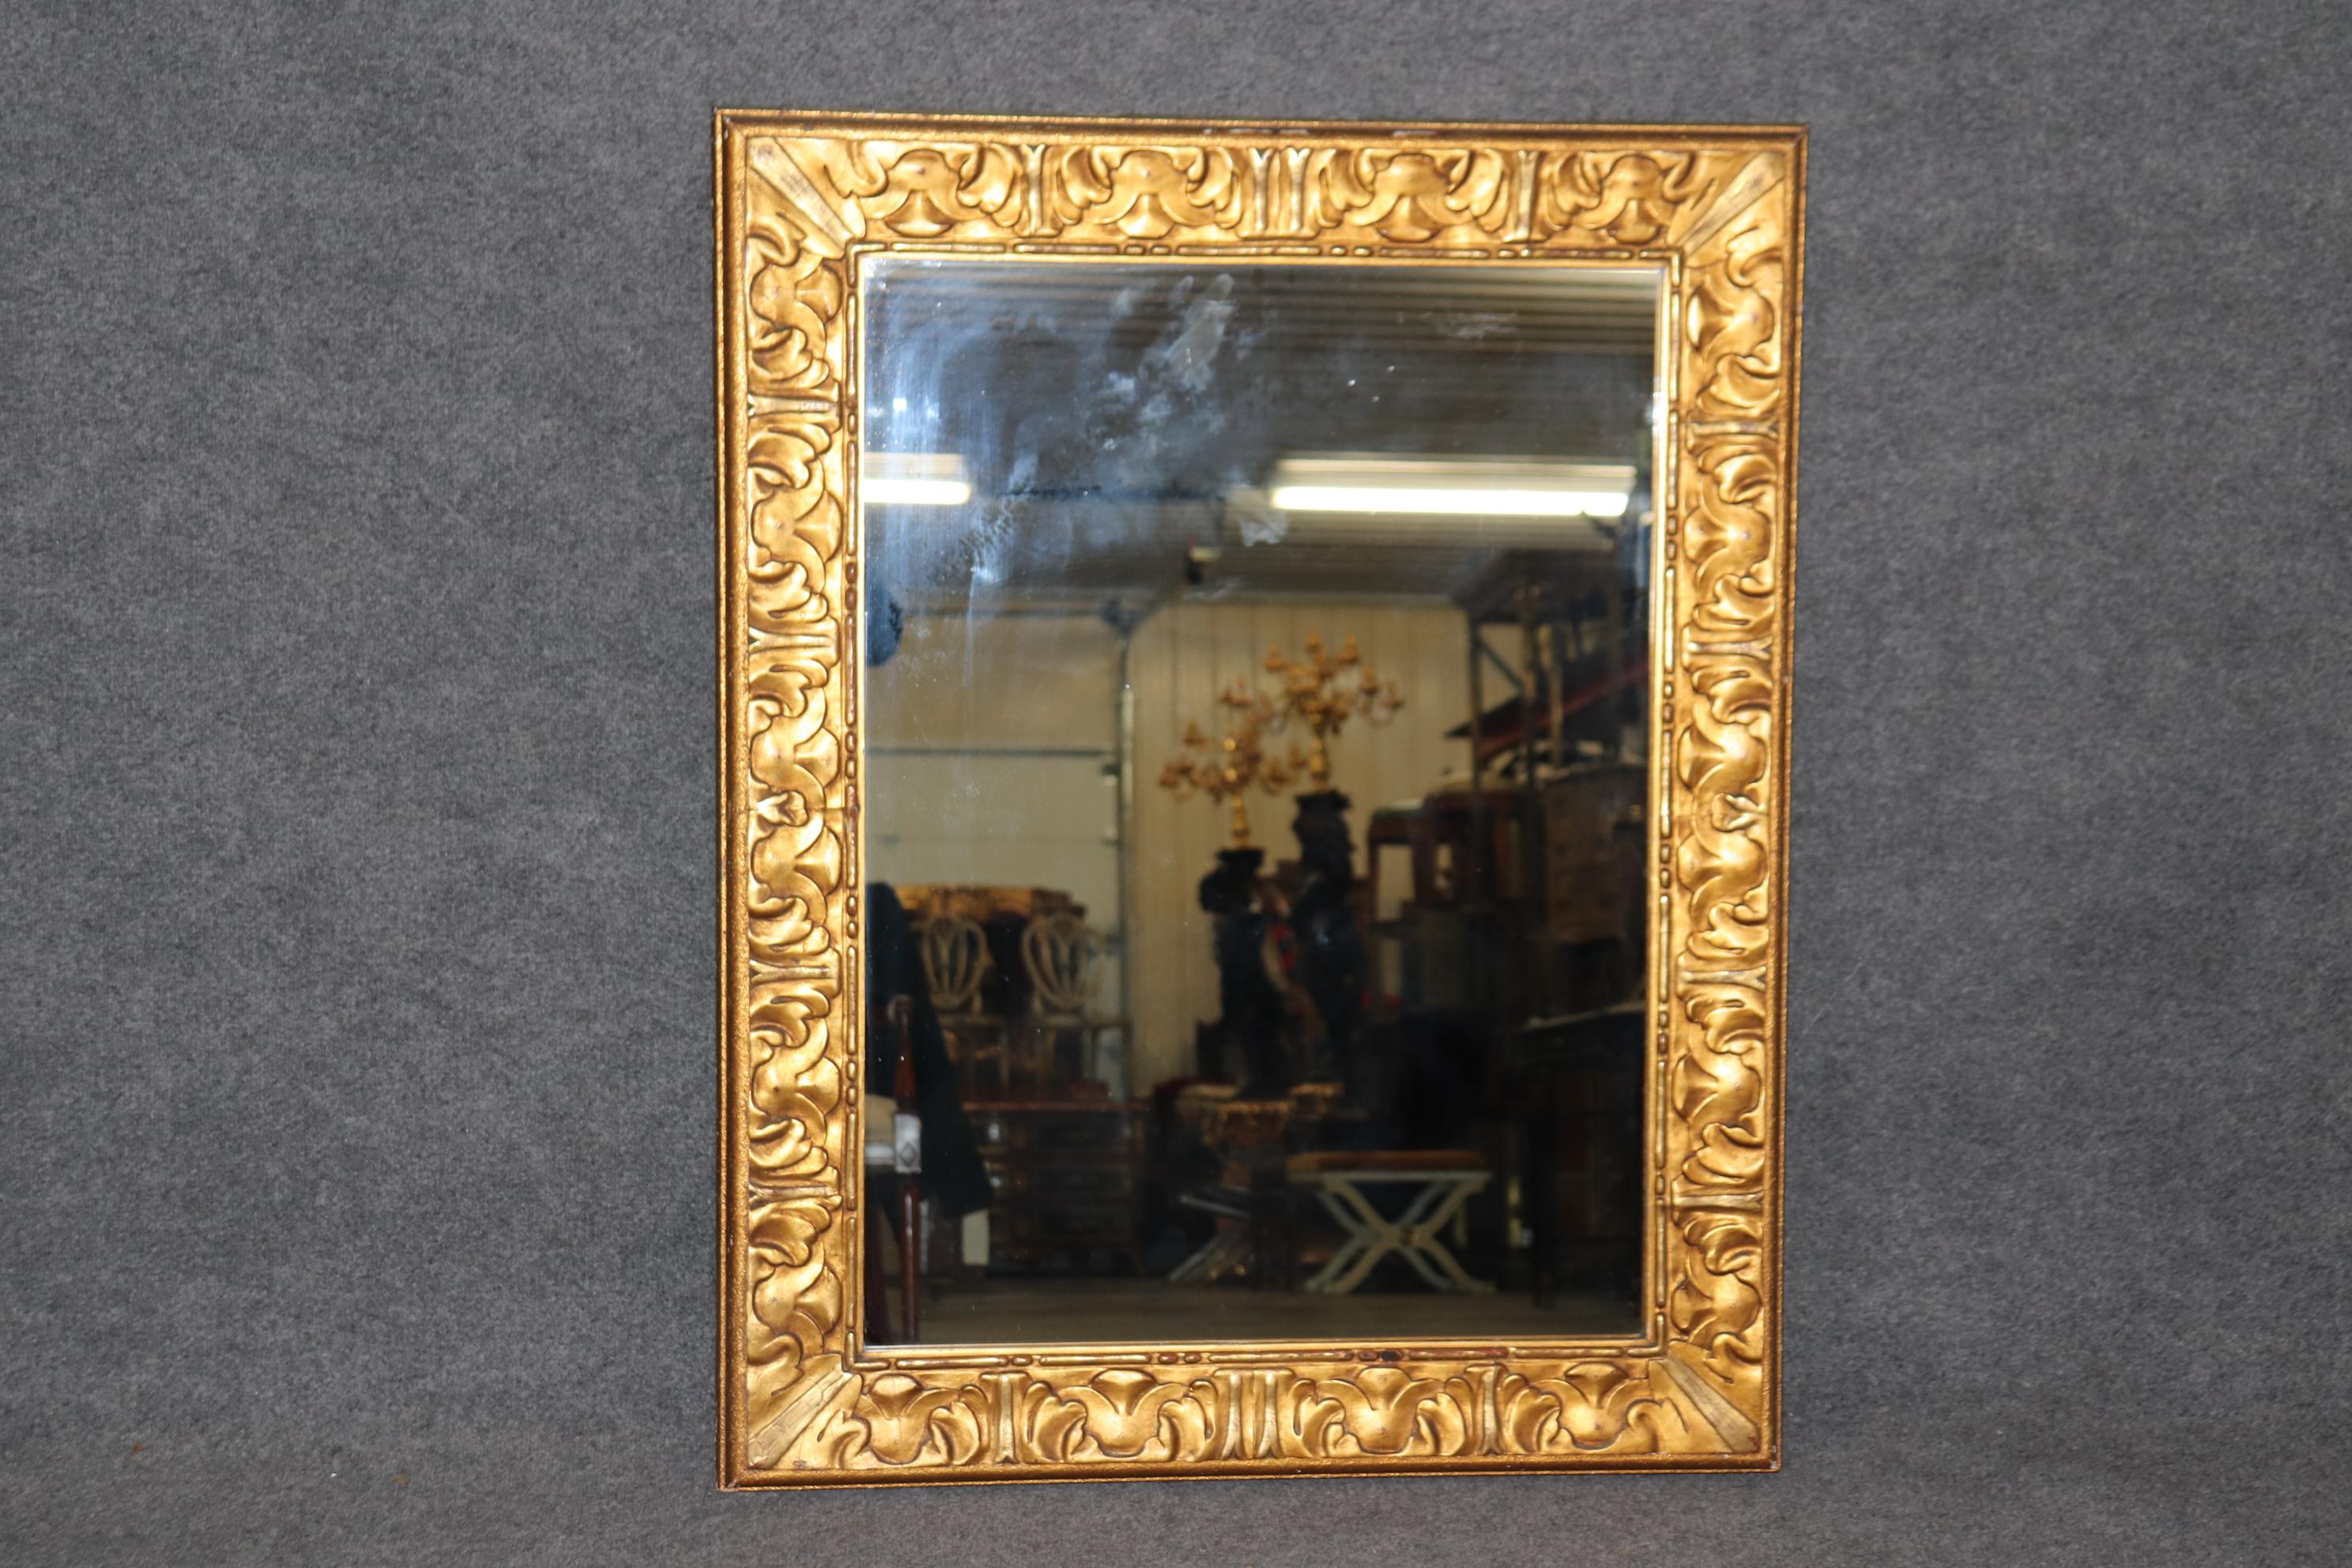 Abmessungen- H:45 1/4in B: 36in T: 2 1/4in

Dieser antike französische Regency-Stil geschnitzt distressed gemalt Wand hängen Spiegel ist von höchster Qualität und ist perfekt für Sie und Ihr Zuhause! Dieser Spiegel eignet sich perfekt als Flur-,